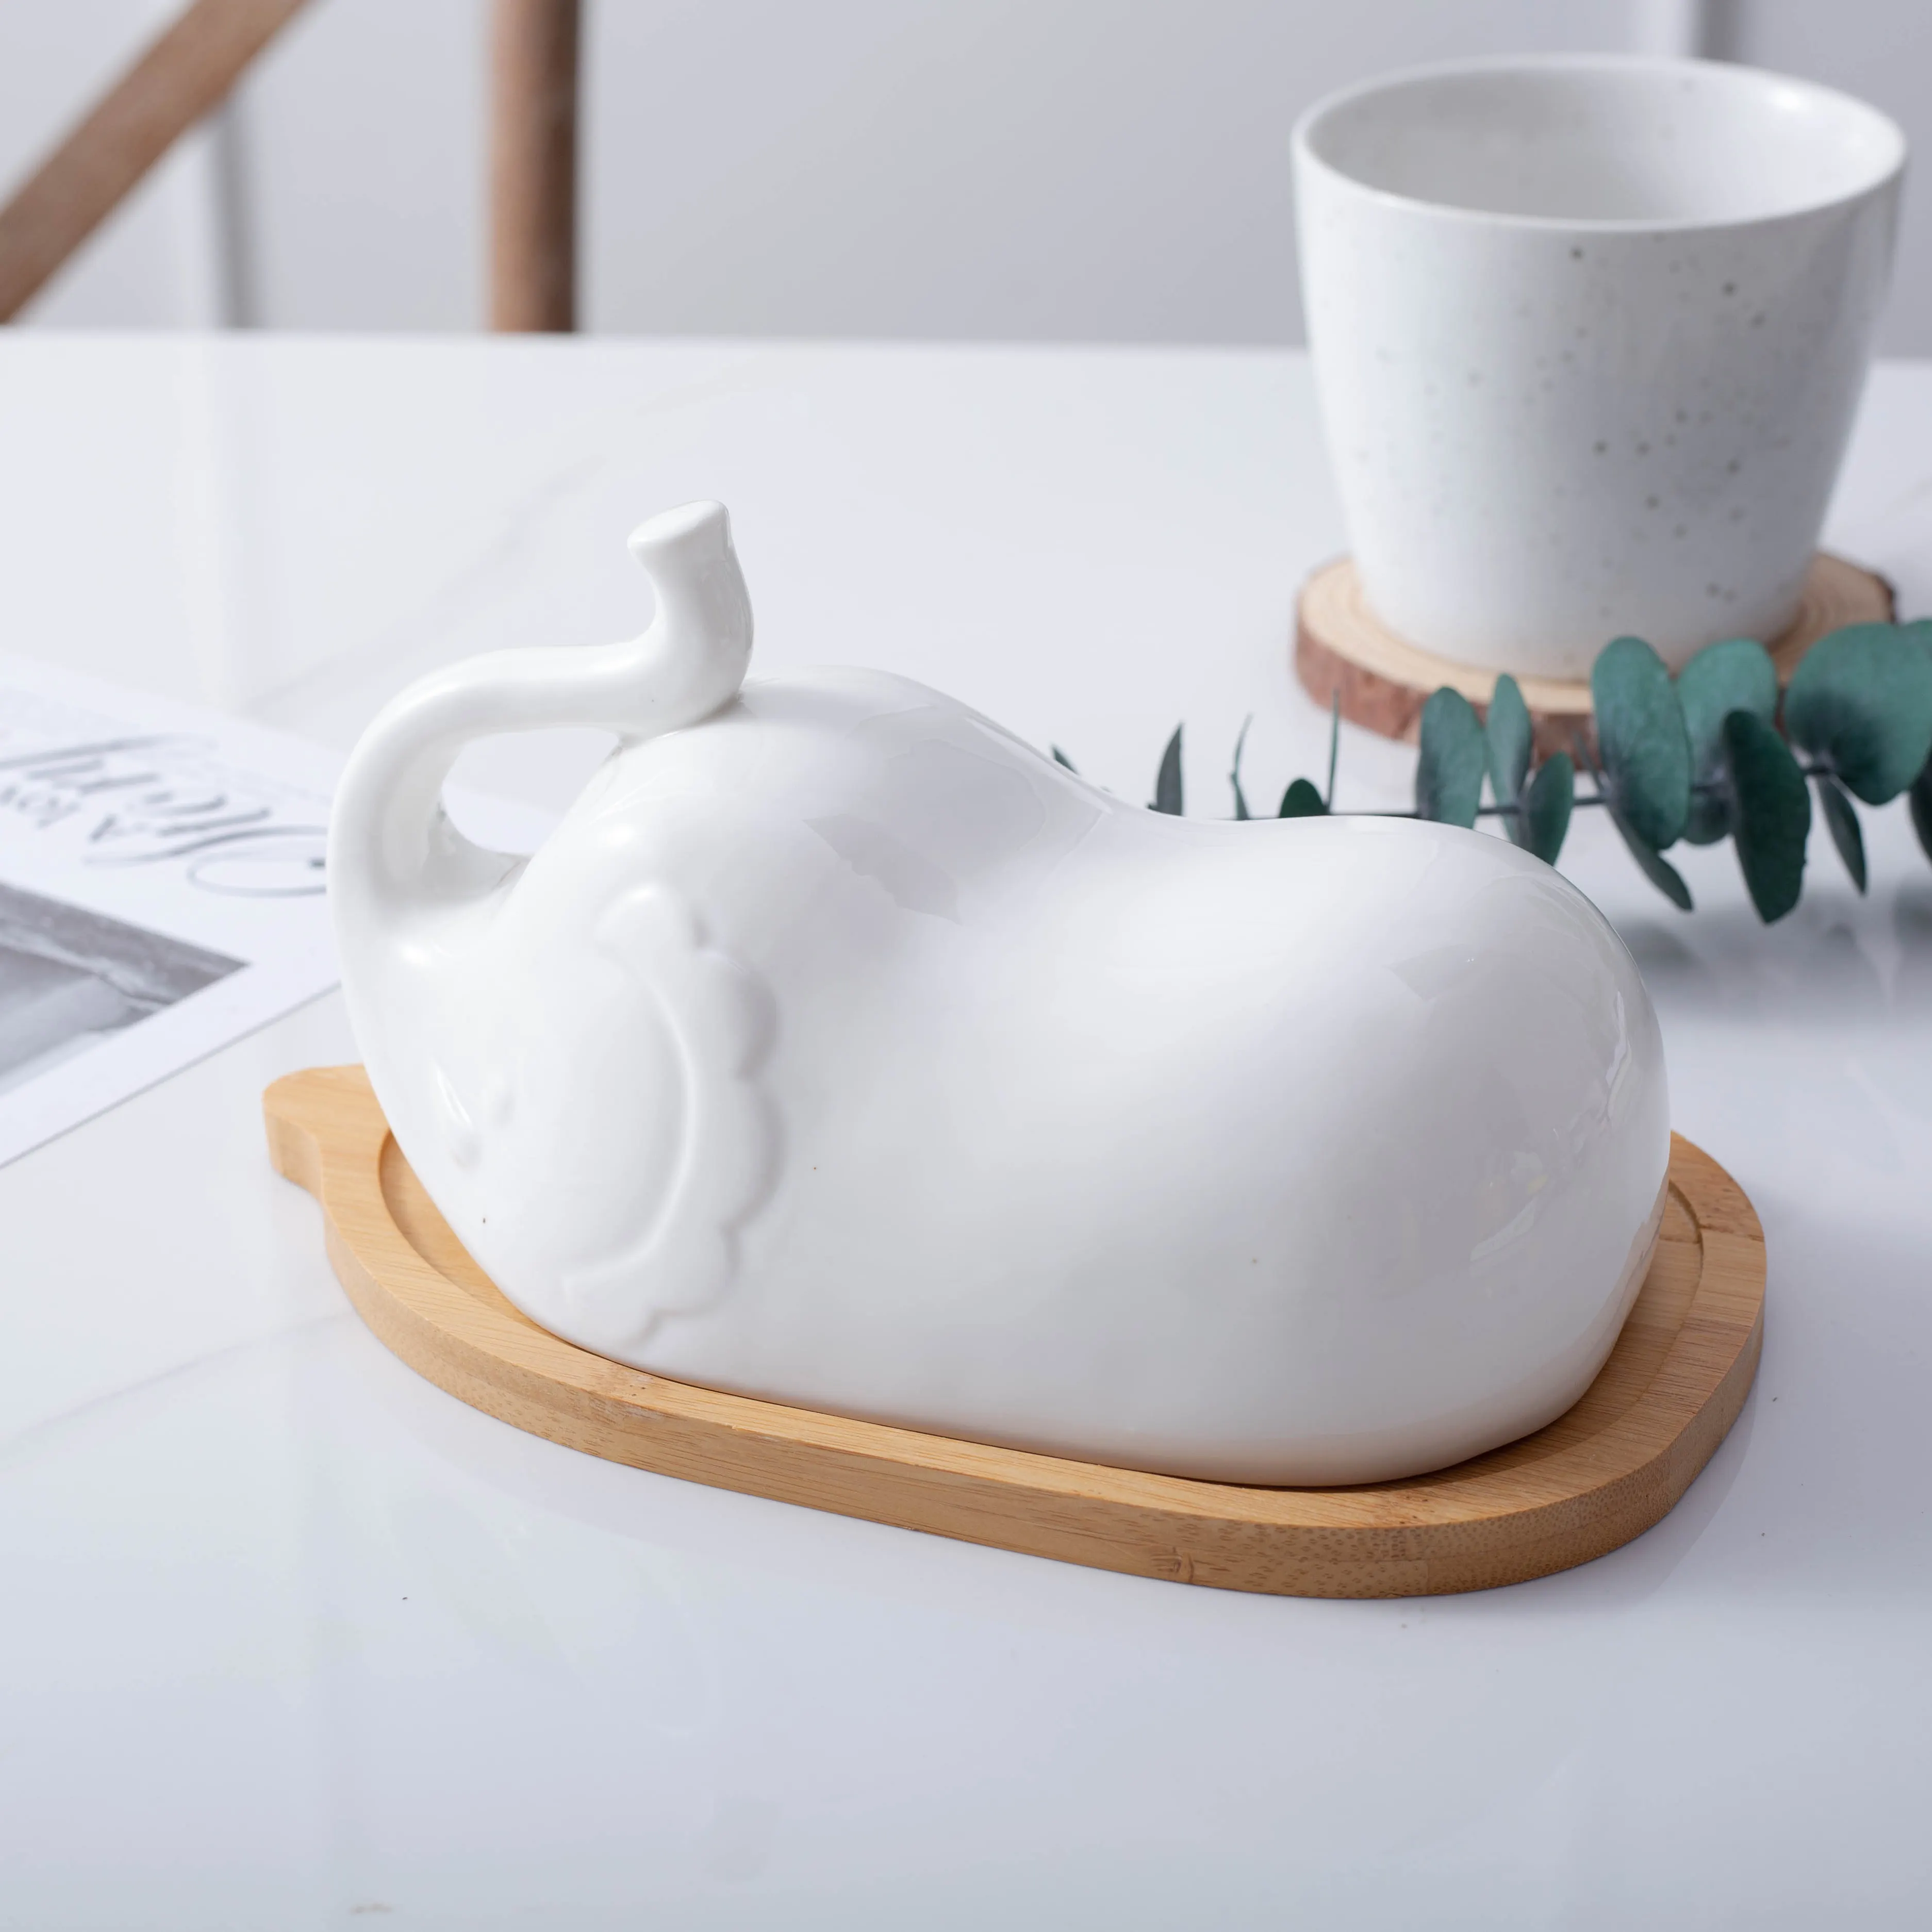 Forma di elefante burro keeper individuale imballaggio di ceramica burro piatto piatto logo personalizzato accettabile